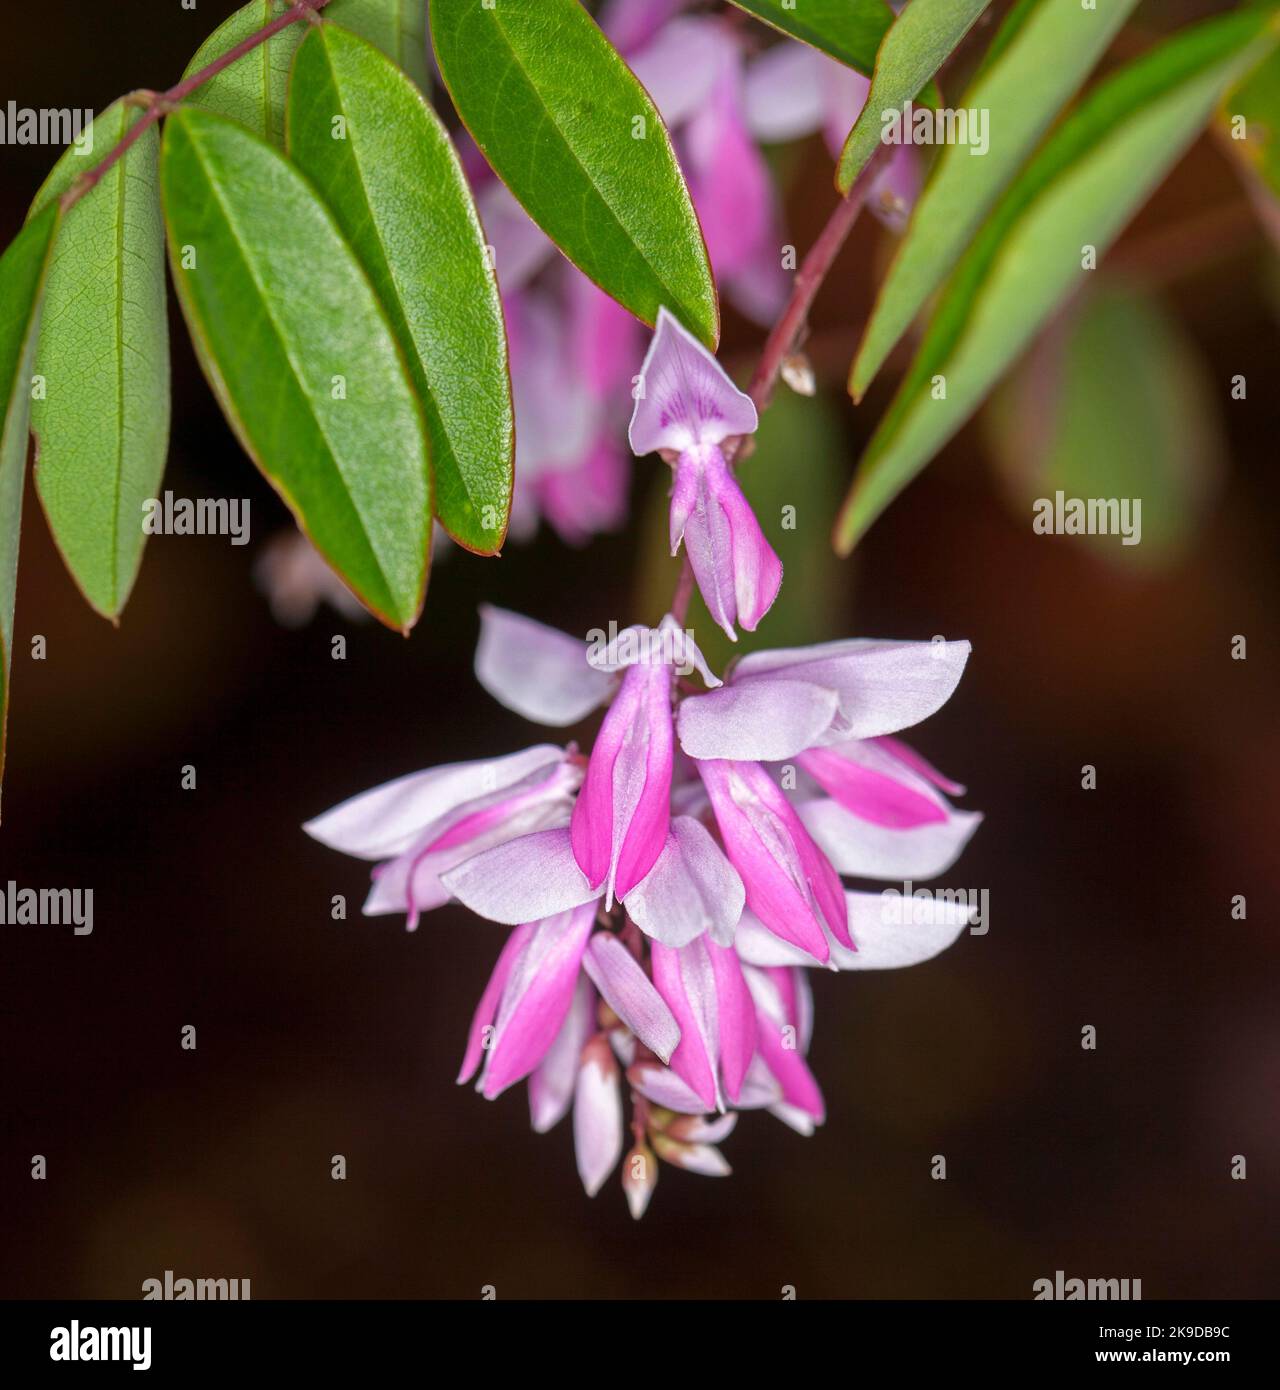 Grappe de fleurs rose pâle et de feuillage vert de l'Indigofera decora - Bush / Wisteria d'été / Chinois Indigo, en Australie Banque D'Images